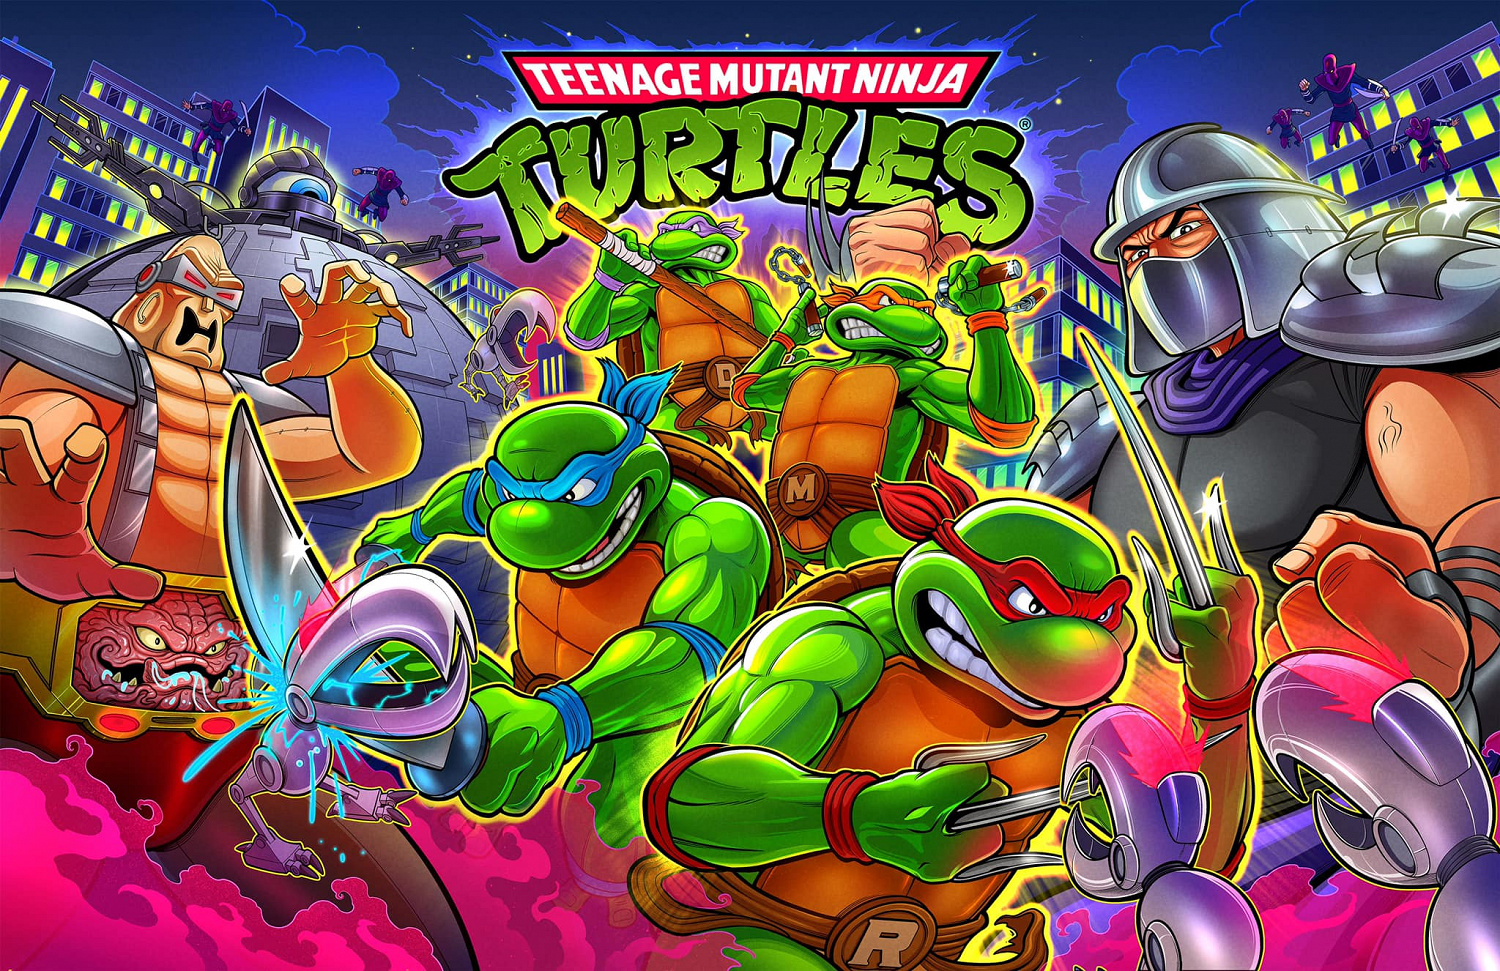 Teenage-Mutant-Ninja-Turtles-Pro_2020-06-01